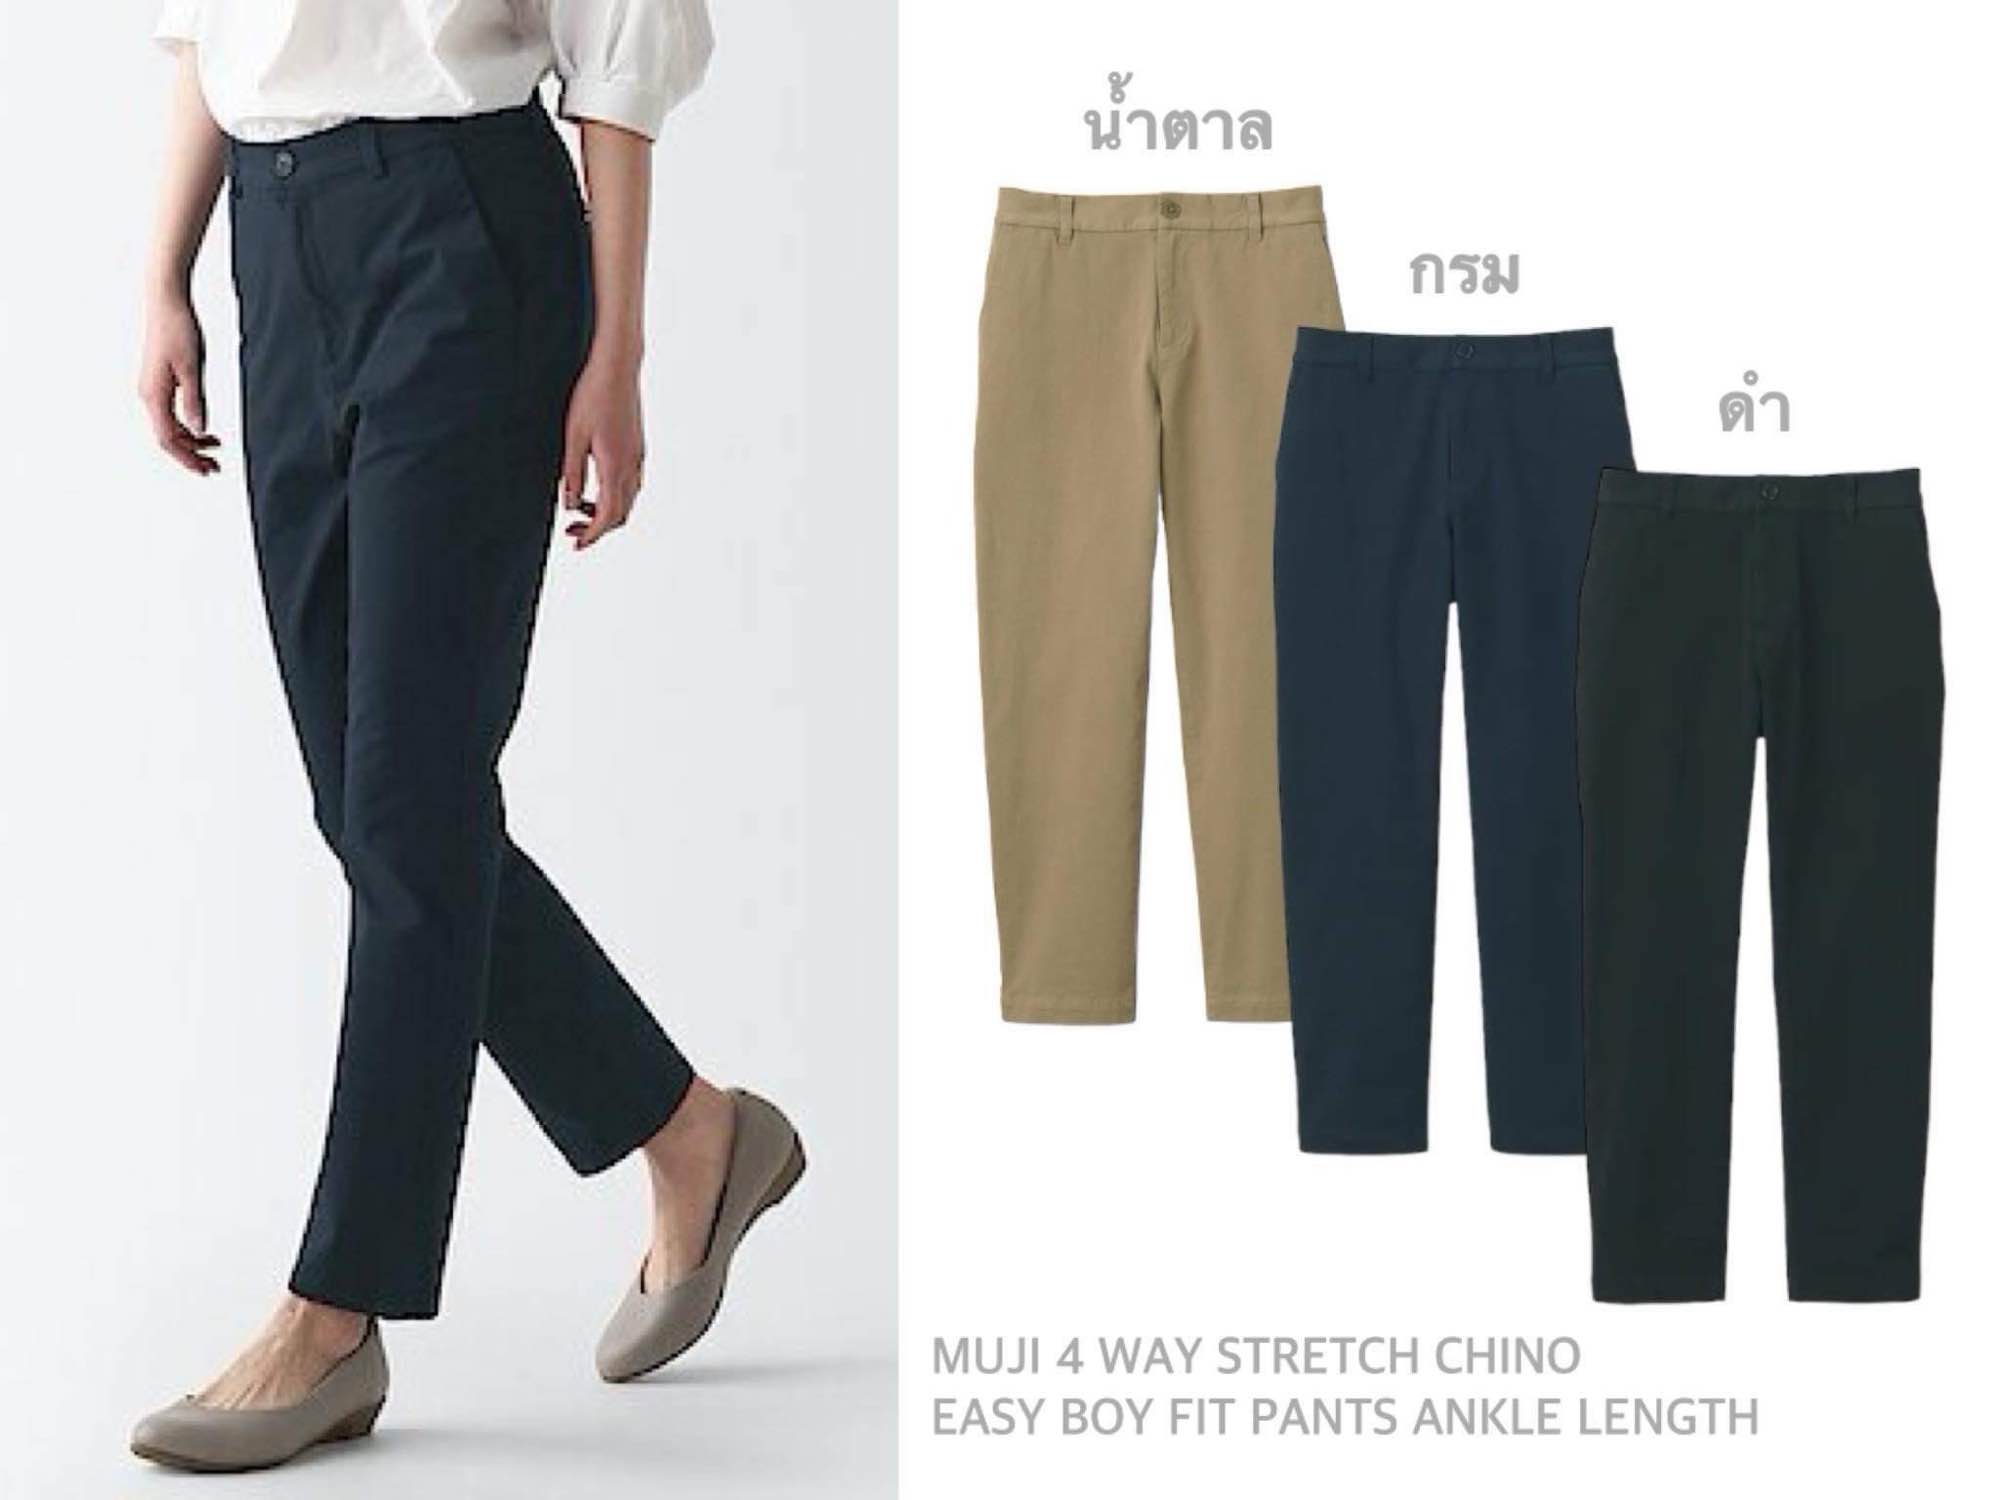 MUJI Women's 4-Way Stretch Boyfit Chino Pants